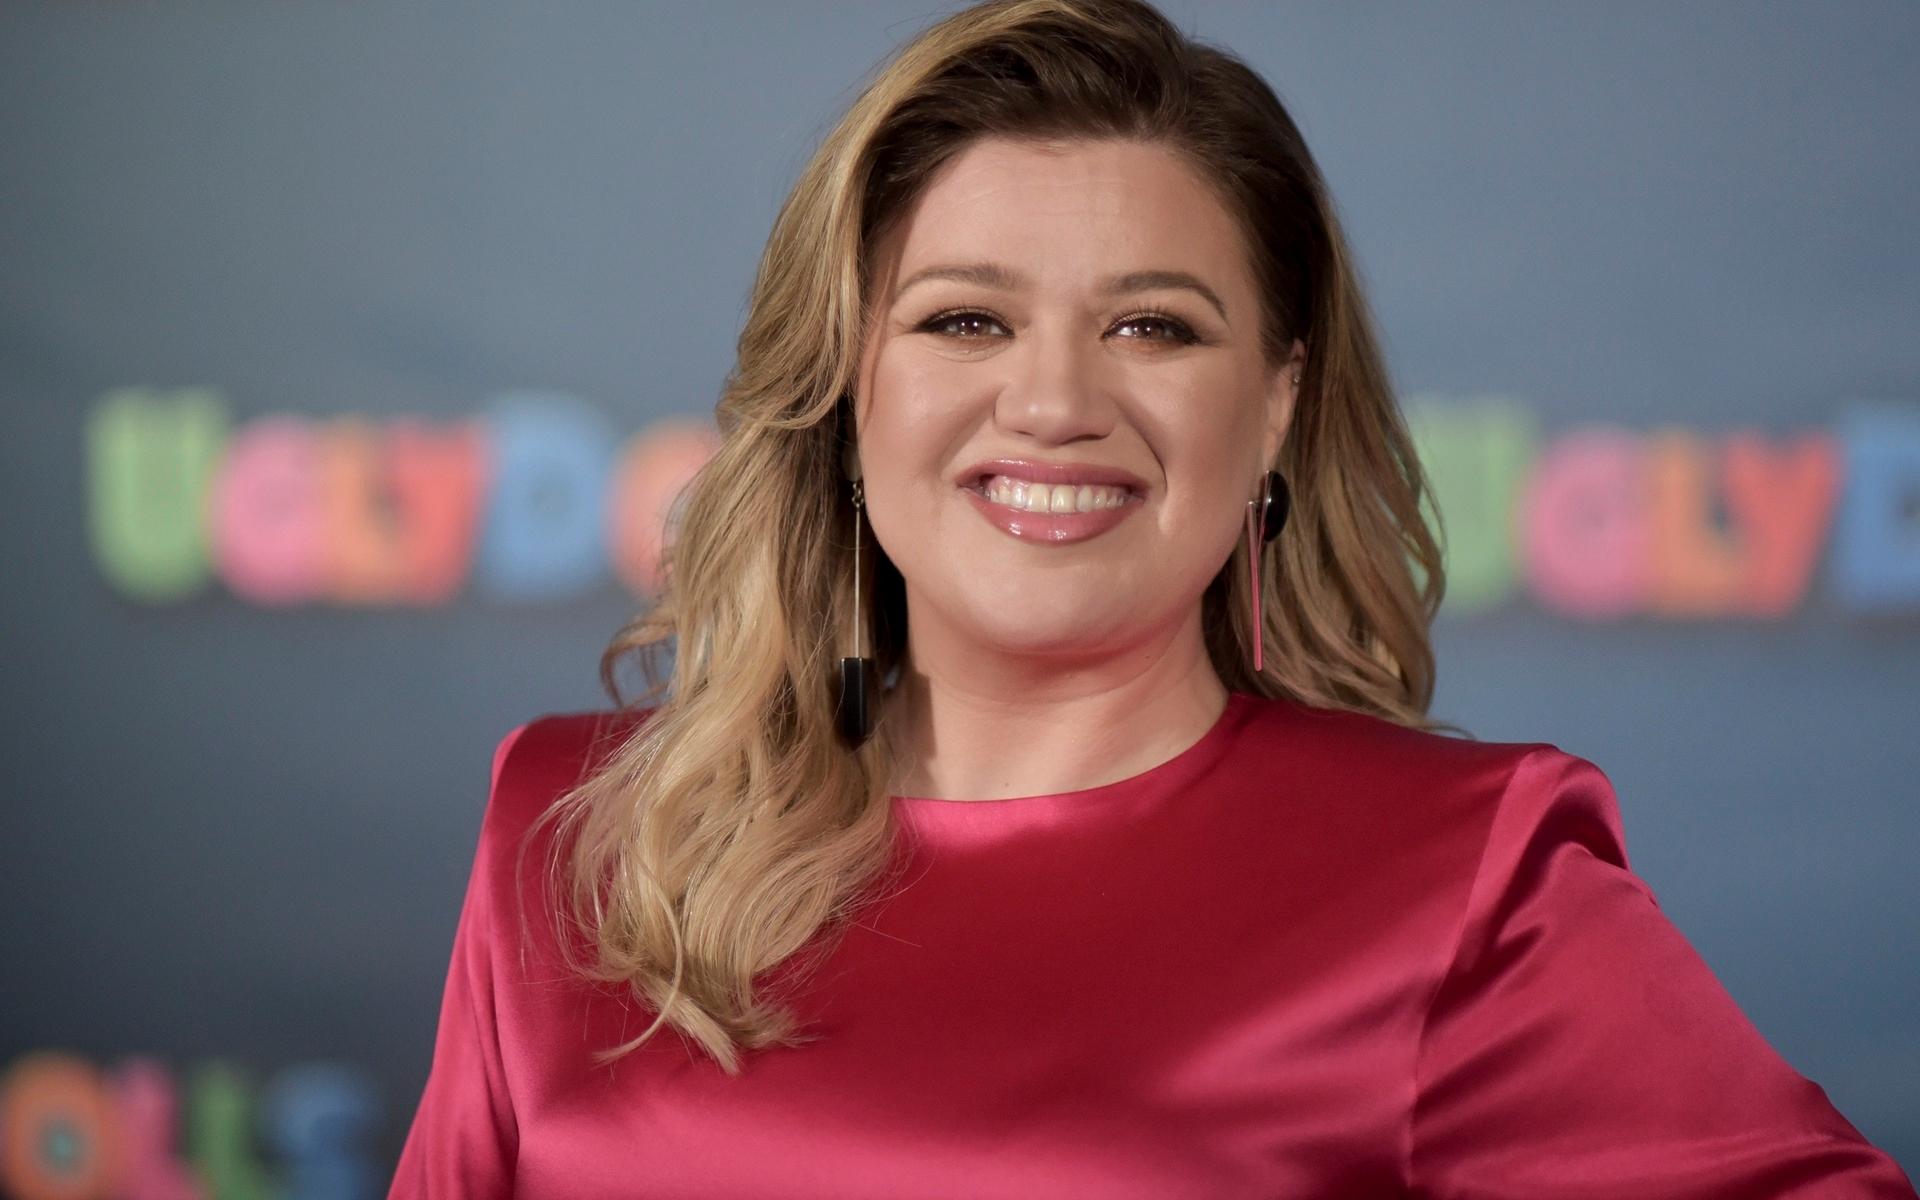 Artisten och programledaren Kelly Clarkson har en egen talkshow, ”The Kelly Clarkson show” och hon blir den som tar över Ellen DeGeneres populära programtid när Ellen slutar nästa år.